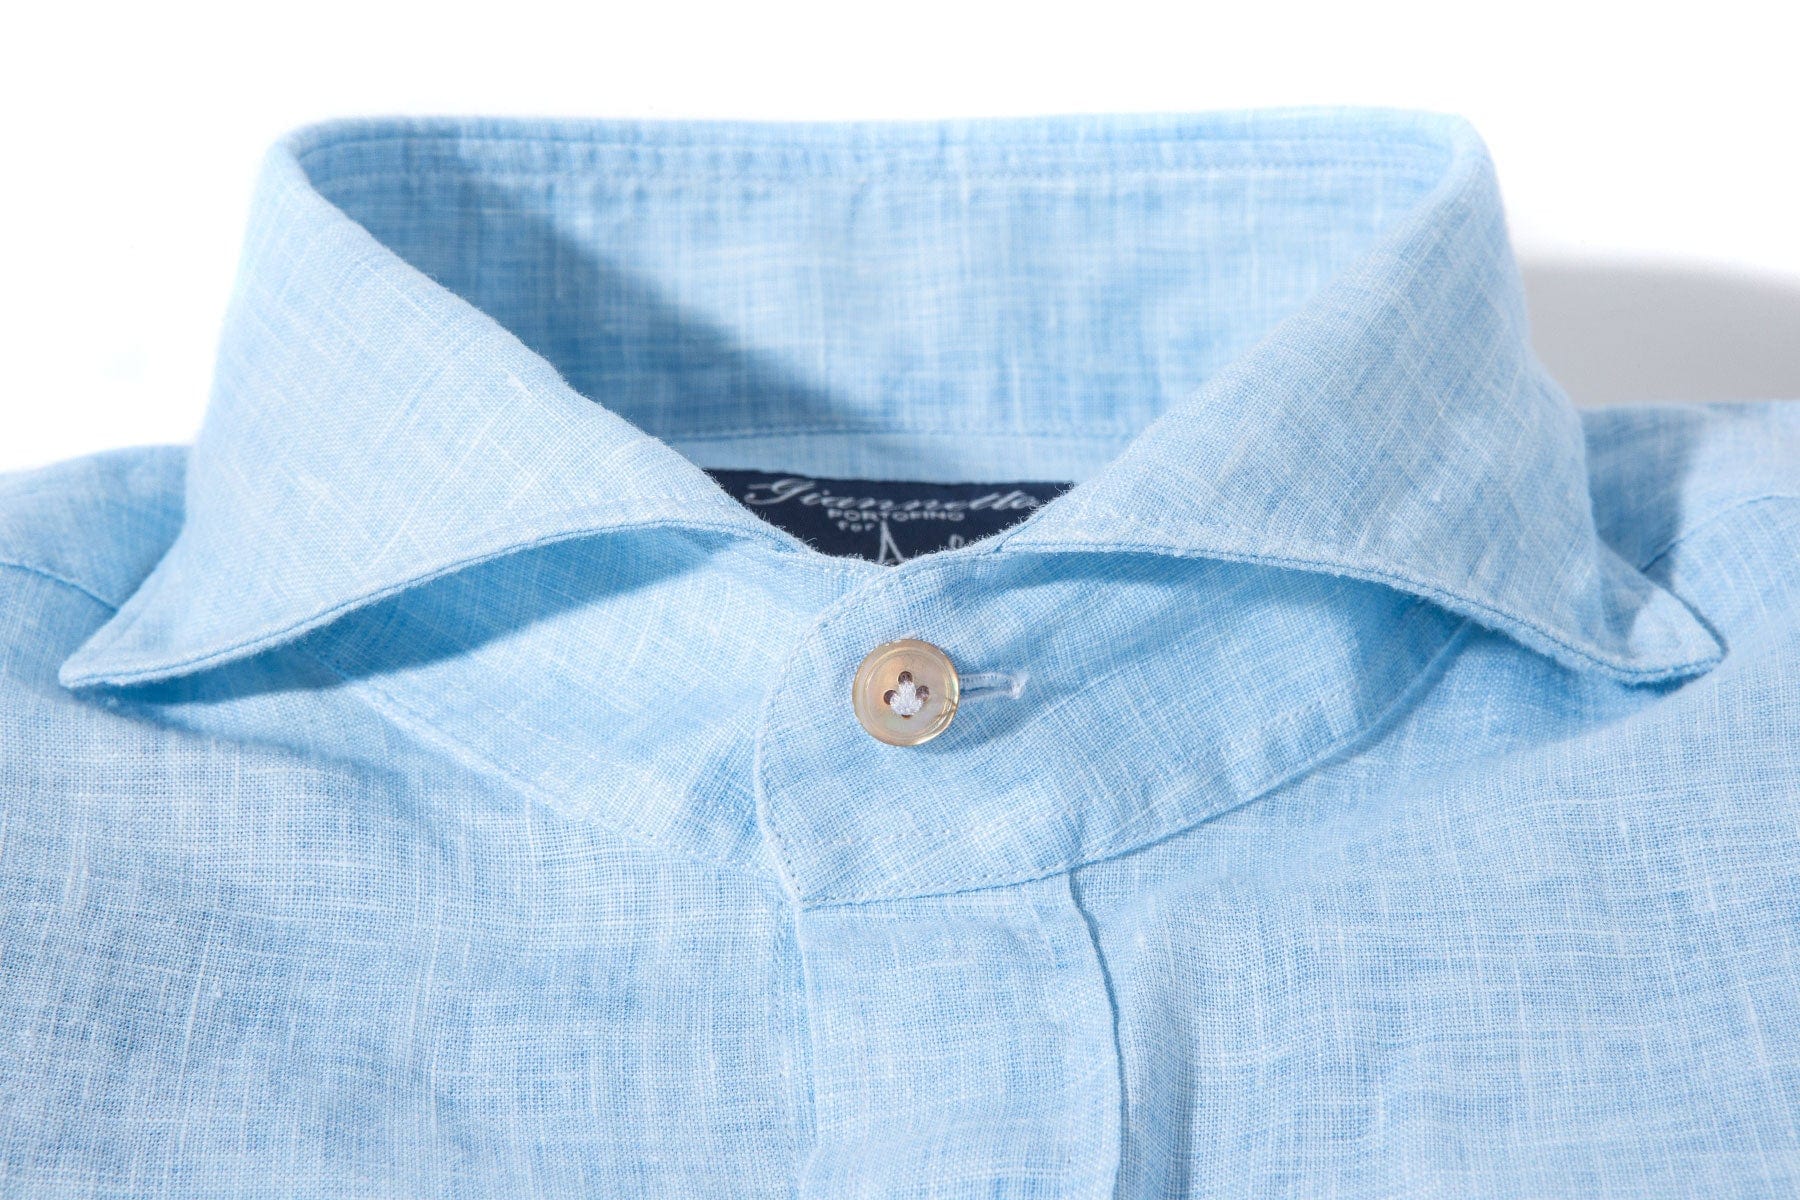 Sorgue Linen Shirt In Light Blue - AXEL'S